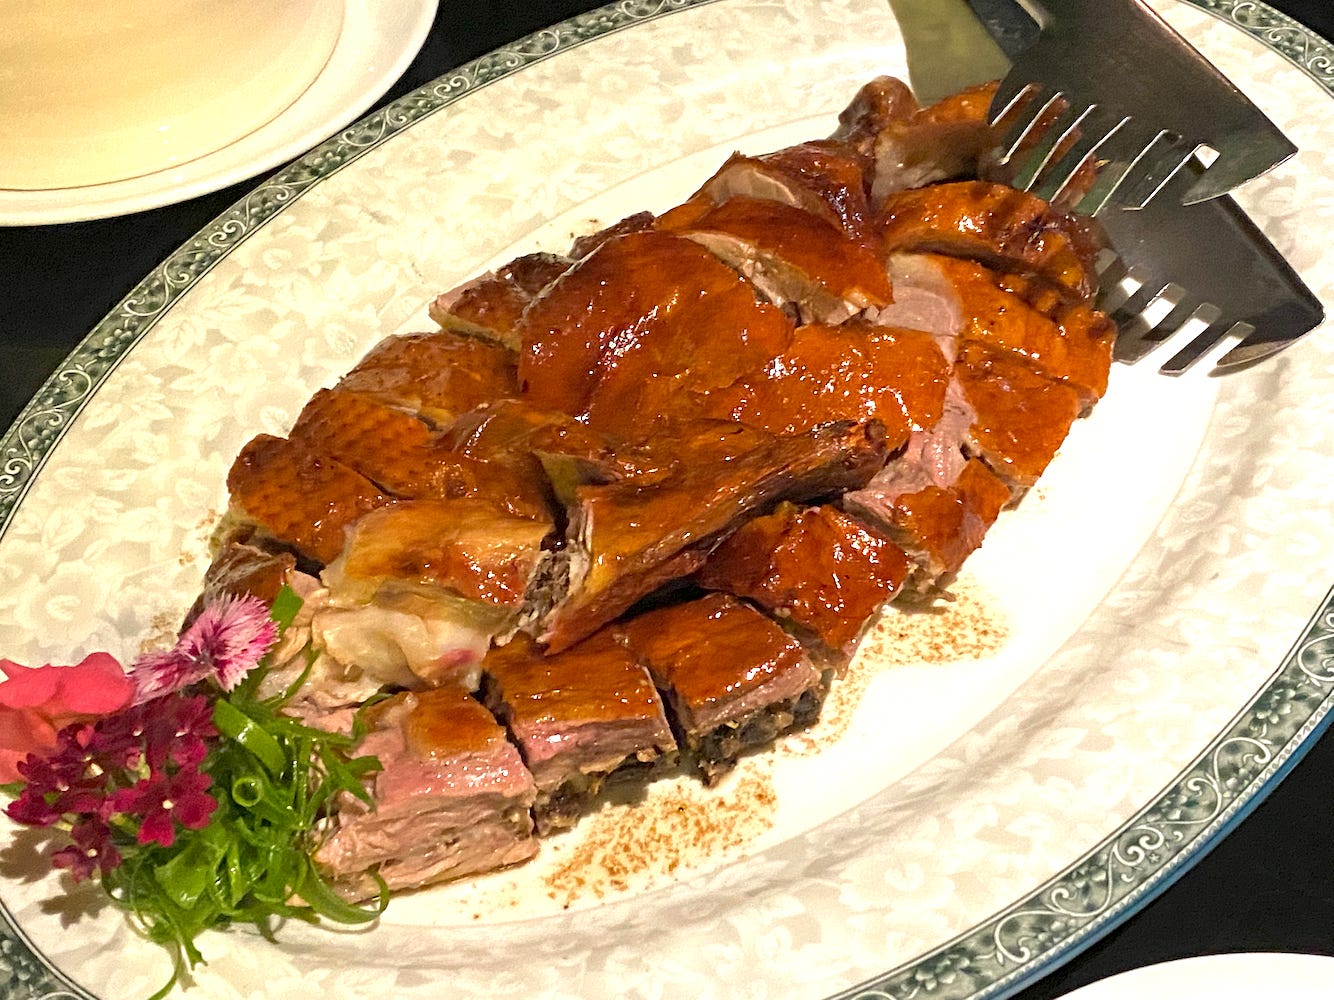 Roast duck at Chifa Titi, a premiere Chifa restaurant in Lima